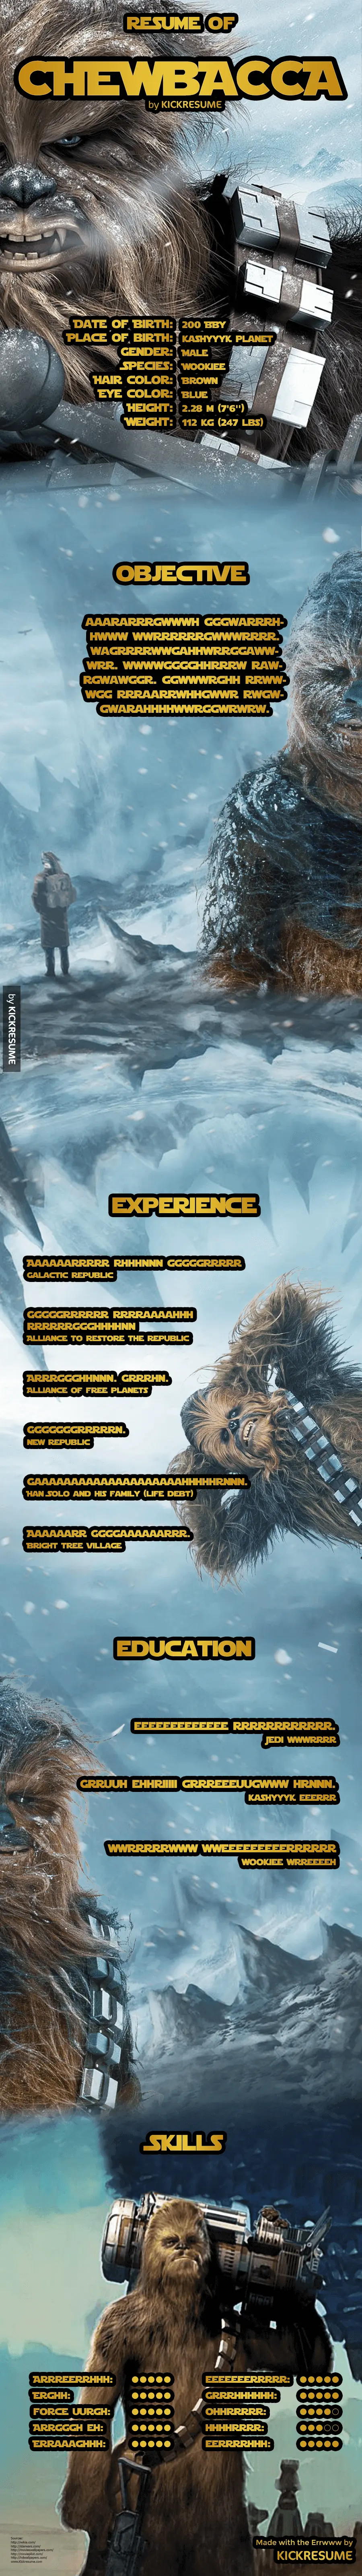 Chewbacca-resume